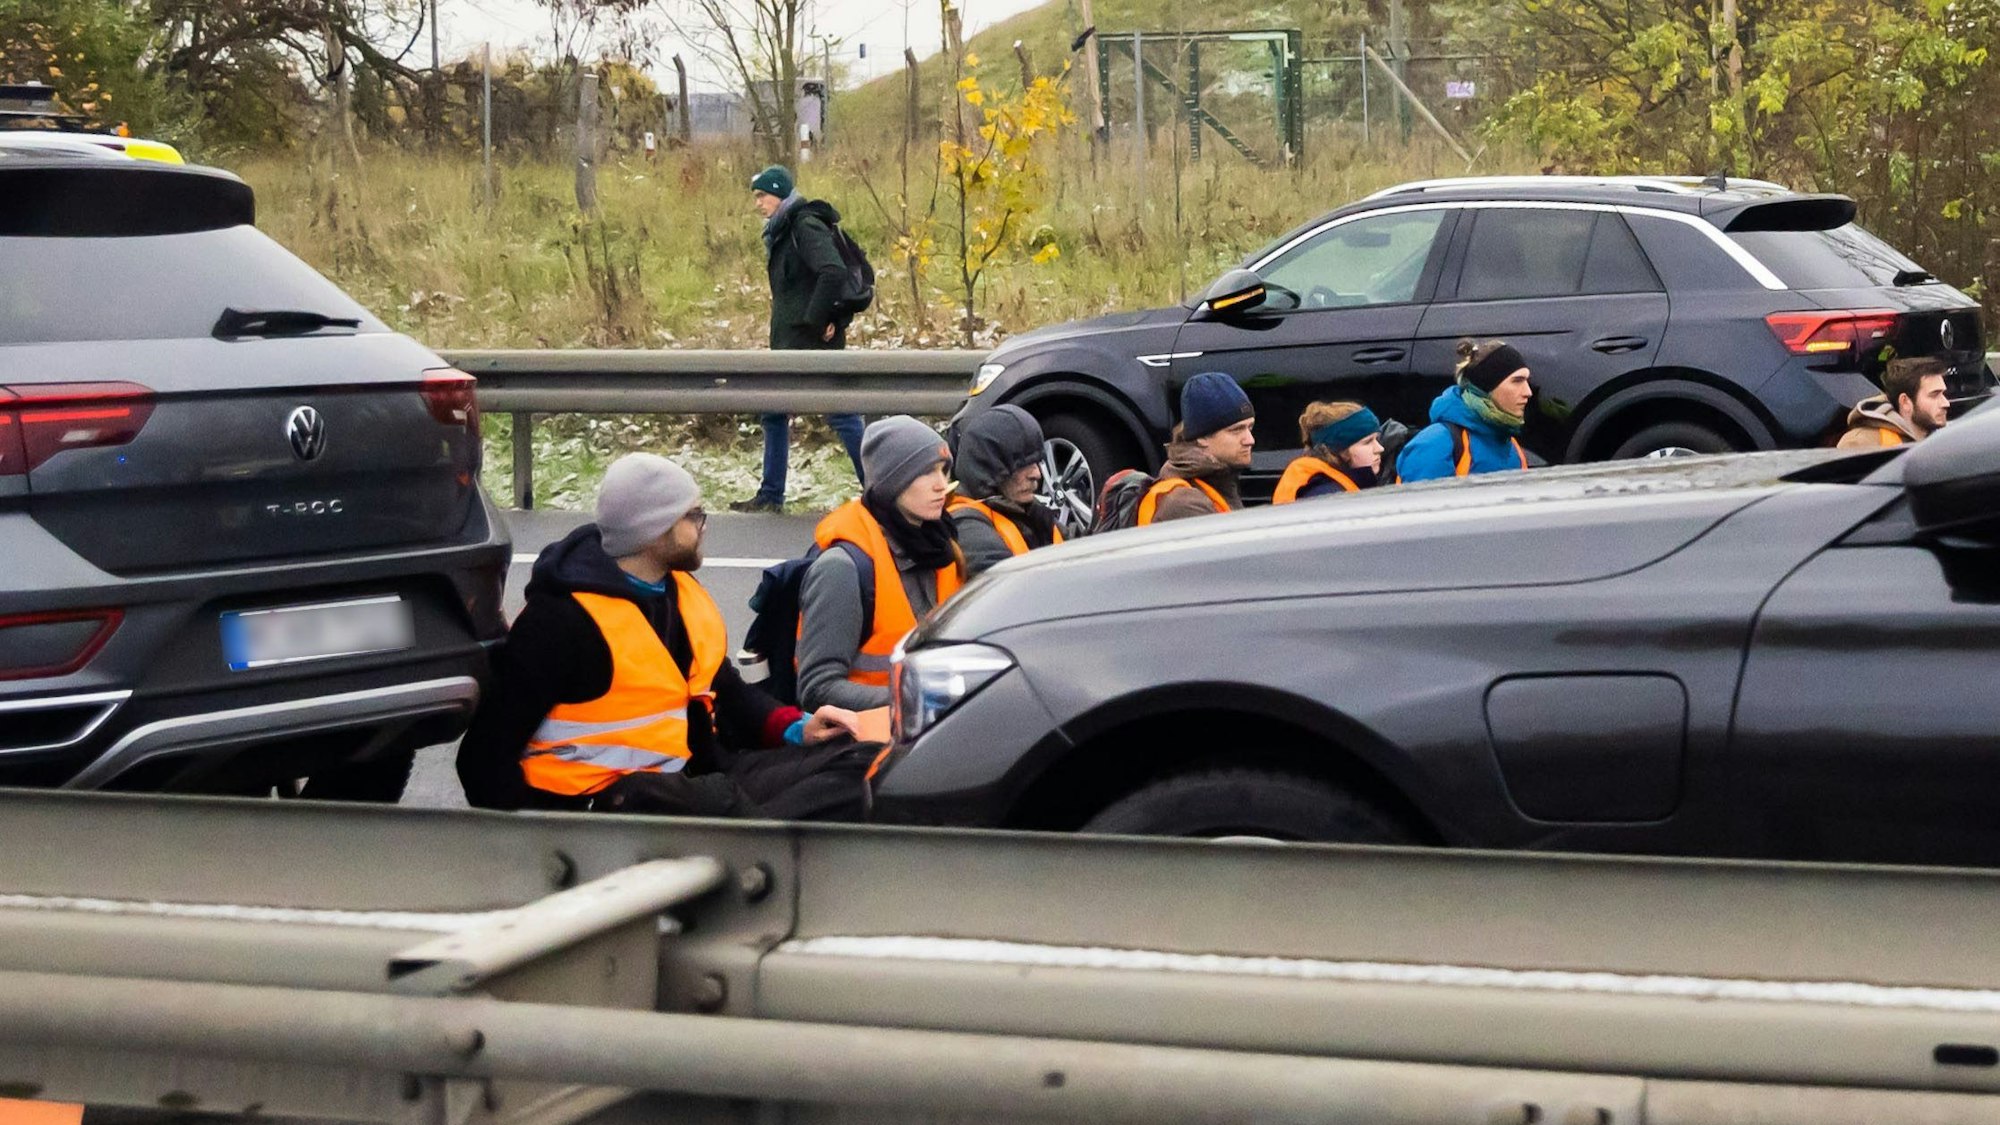 Teilnehmer eines Klimaprotests blockieren auf der A113 kurz vor der Ausfahrt zum Flughafen Berlin Brandenburg (BER)